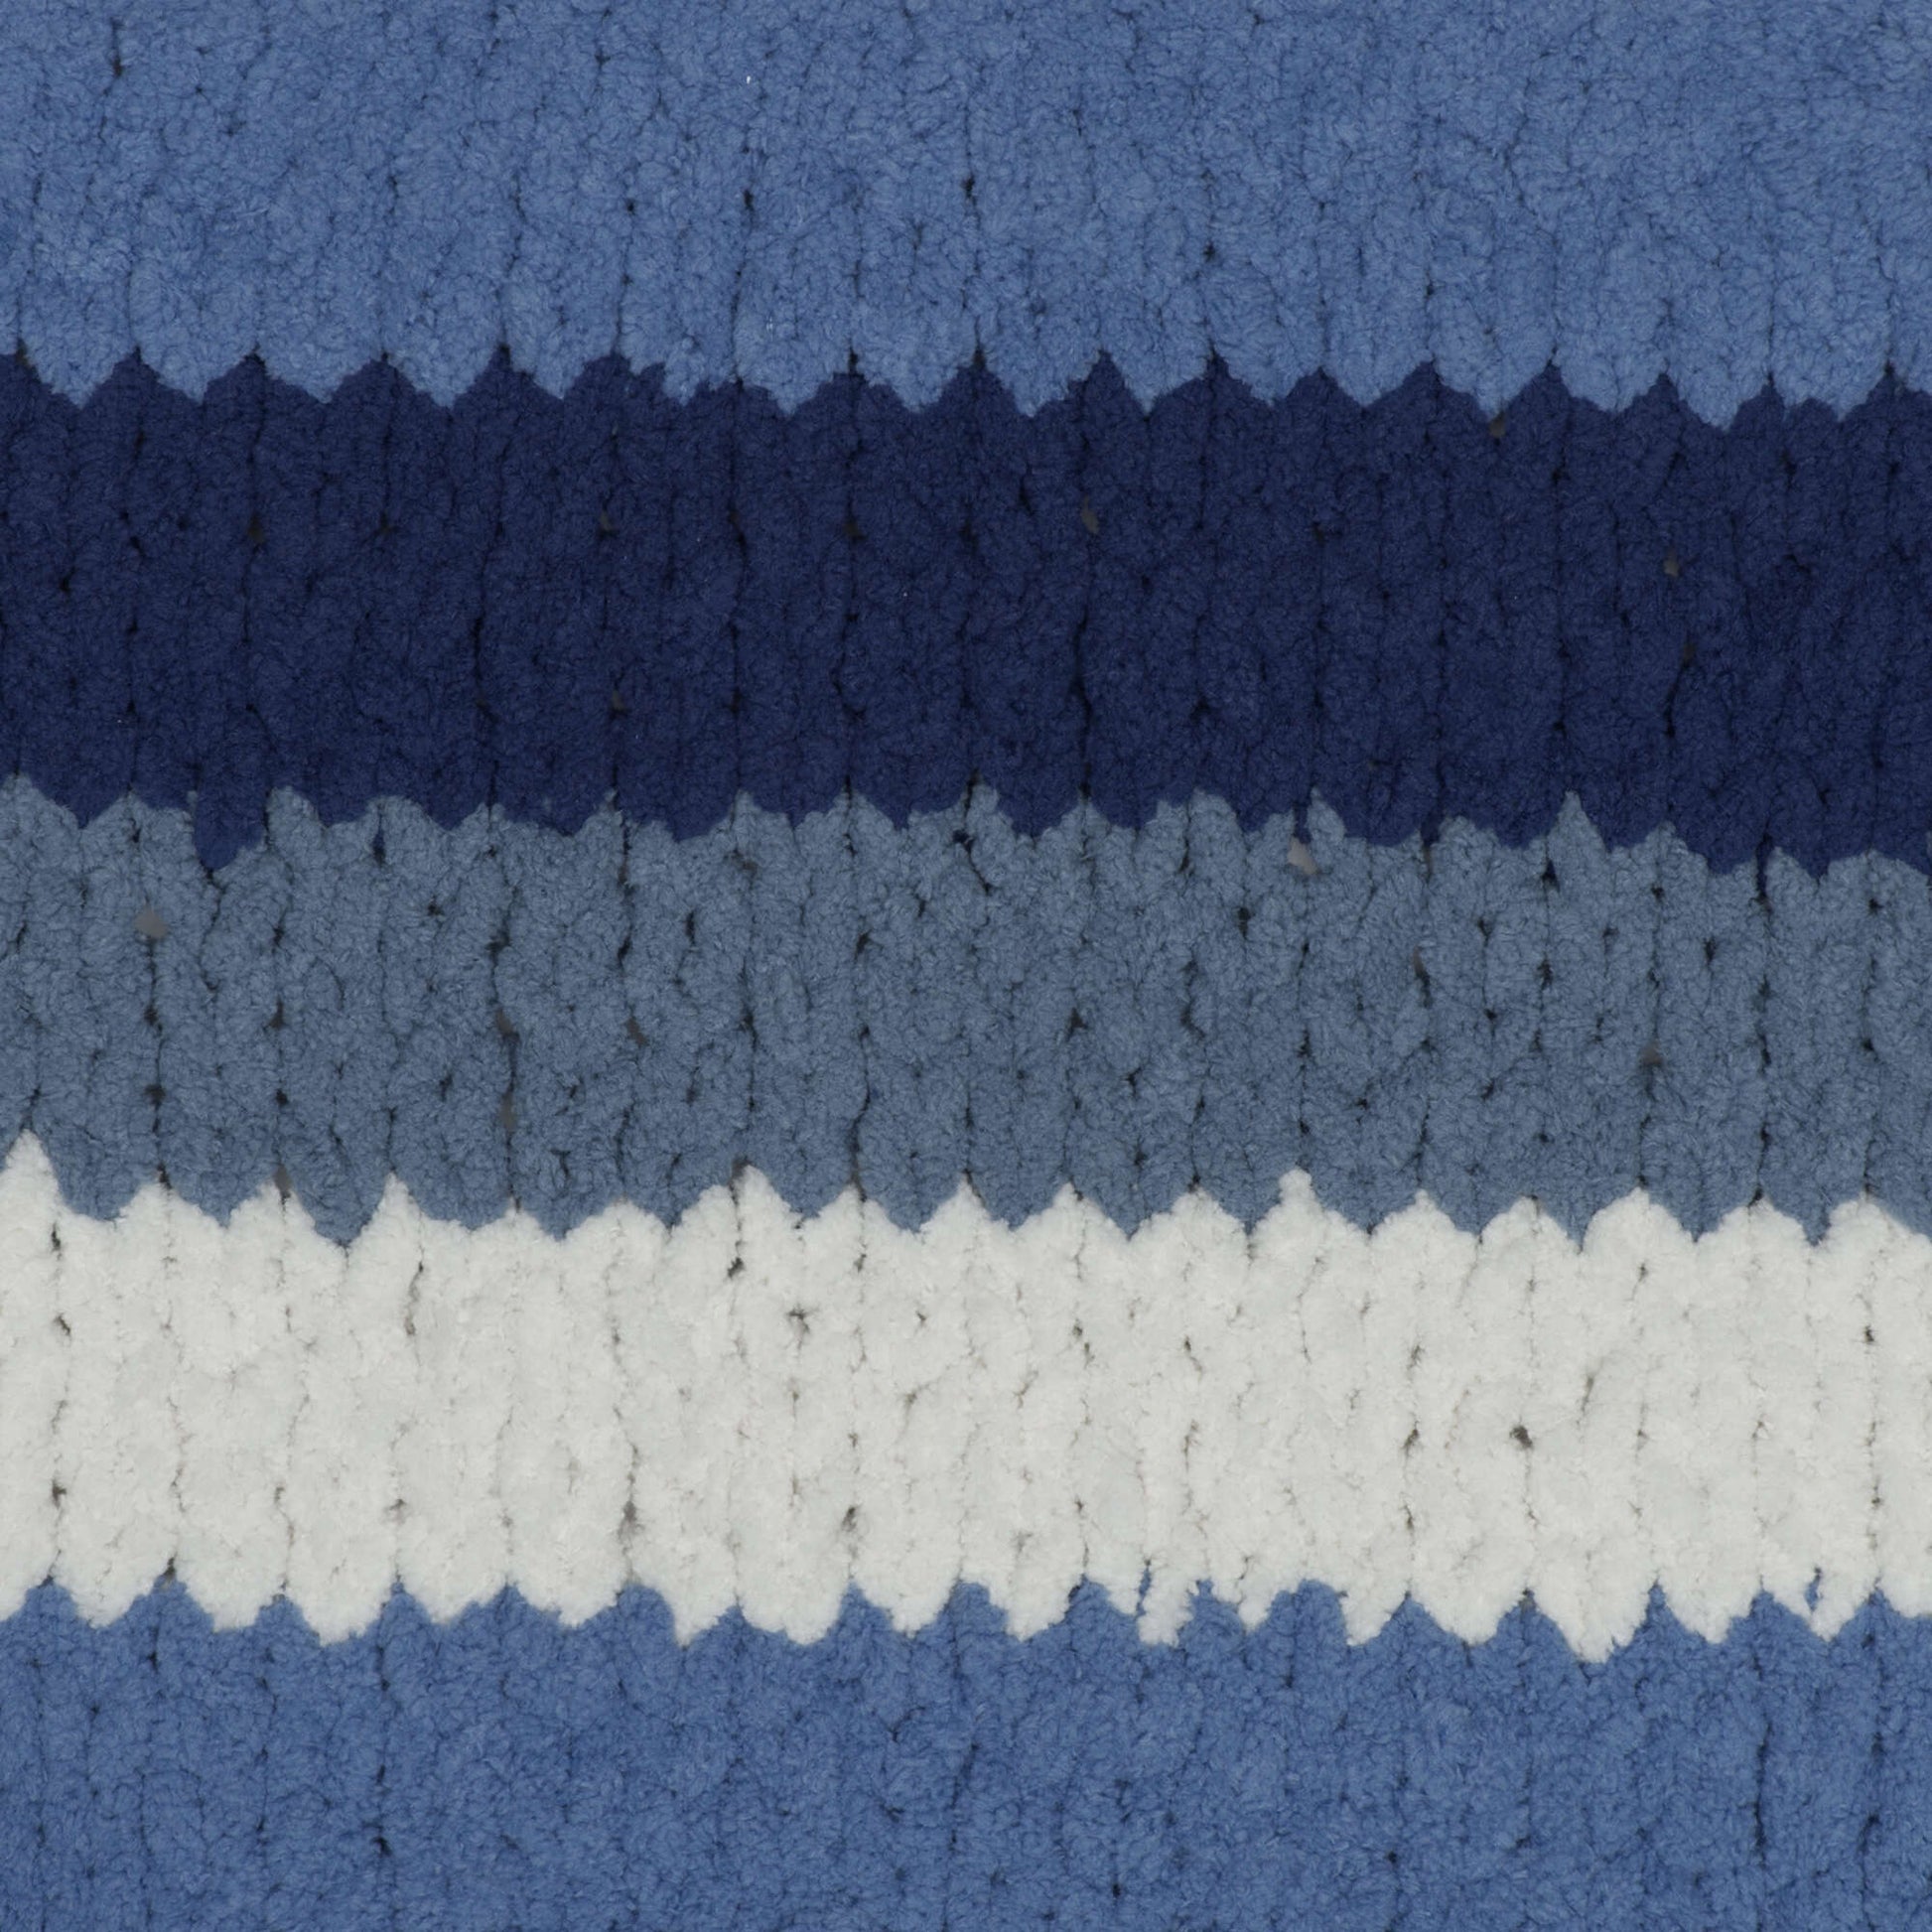 Bernat Blanket Stripes Yarn (300g/10.5oz) - Discontinued Shades Blue Moon